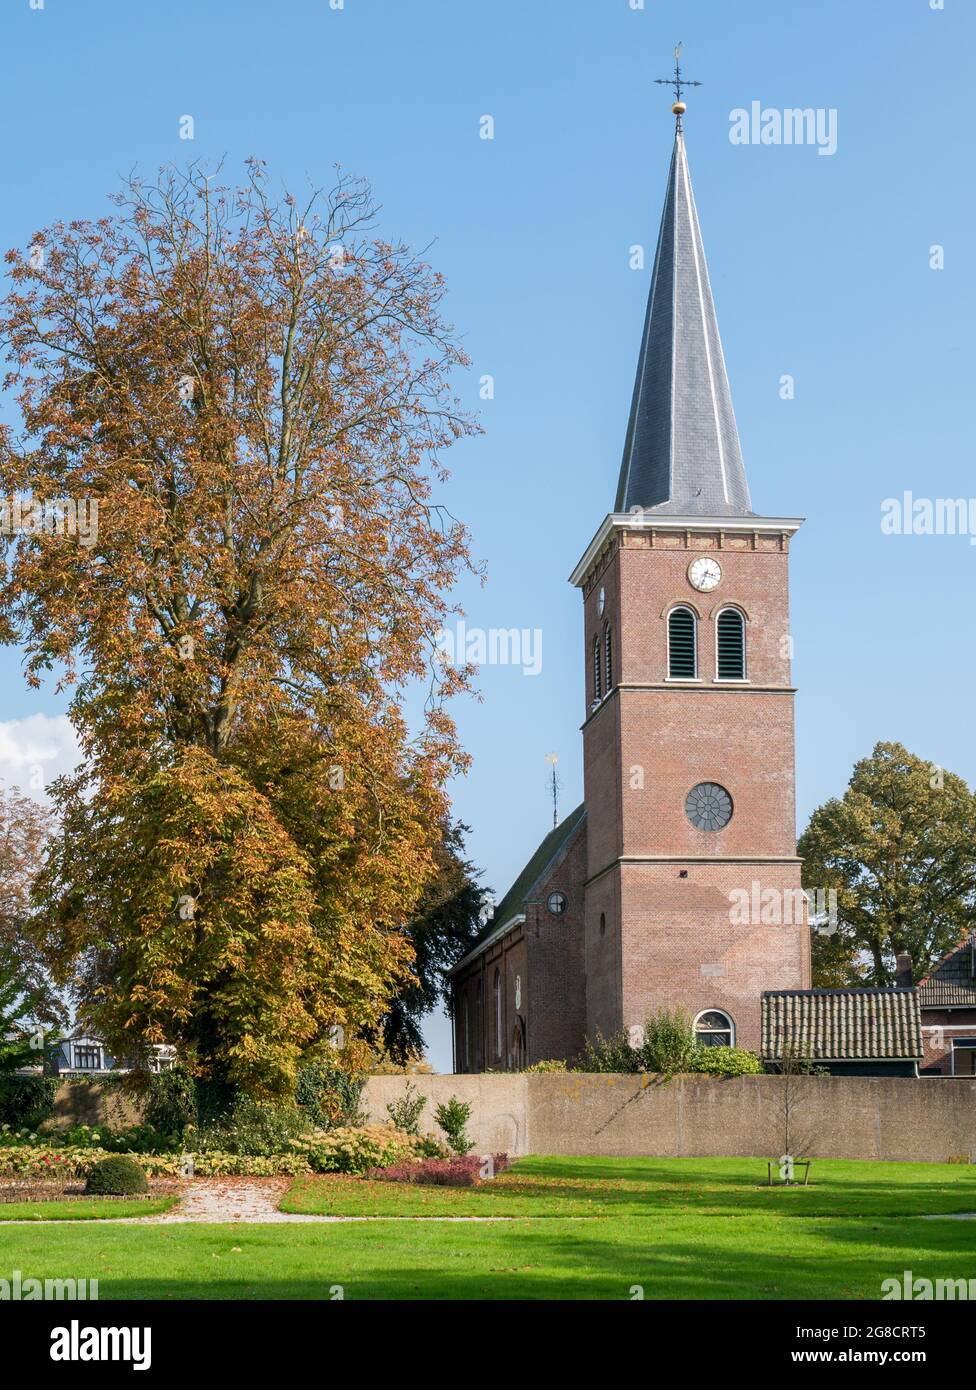 Iglesia reformada Terptsjerke en el pueblo de Akkrum, Frisia, Holanda Foto de stock